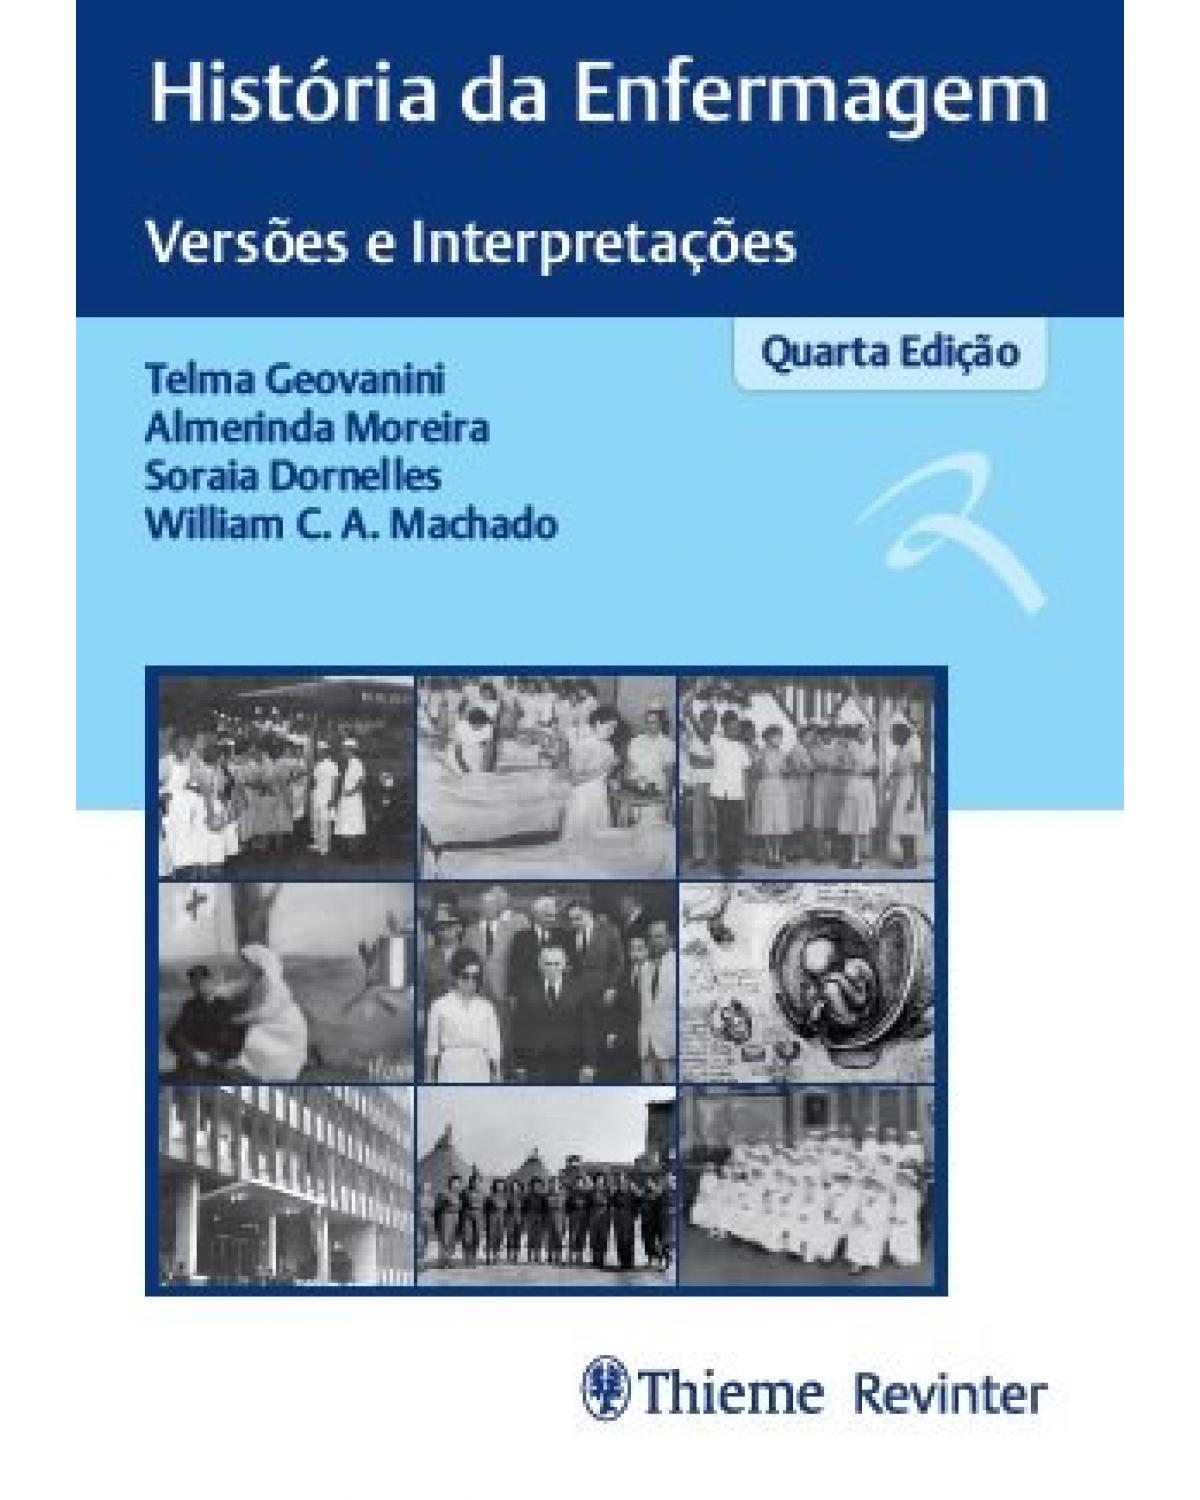 História da enfermagem - versões e interpretações - 4ª Edição | 2019